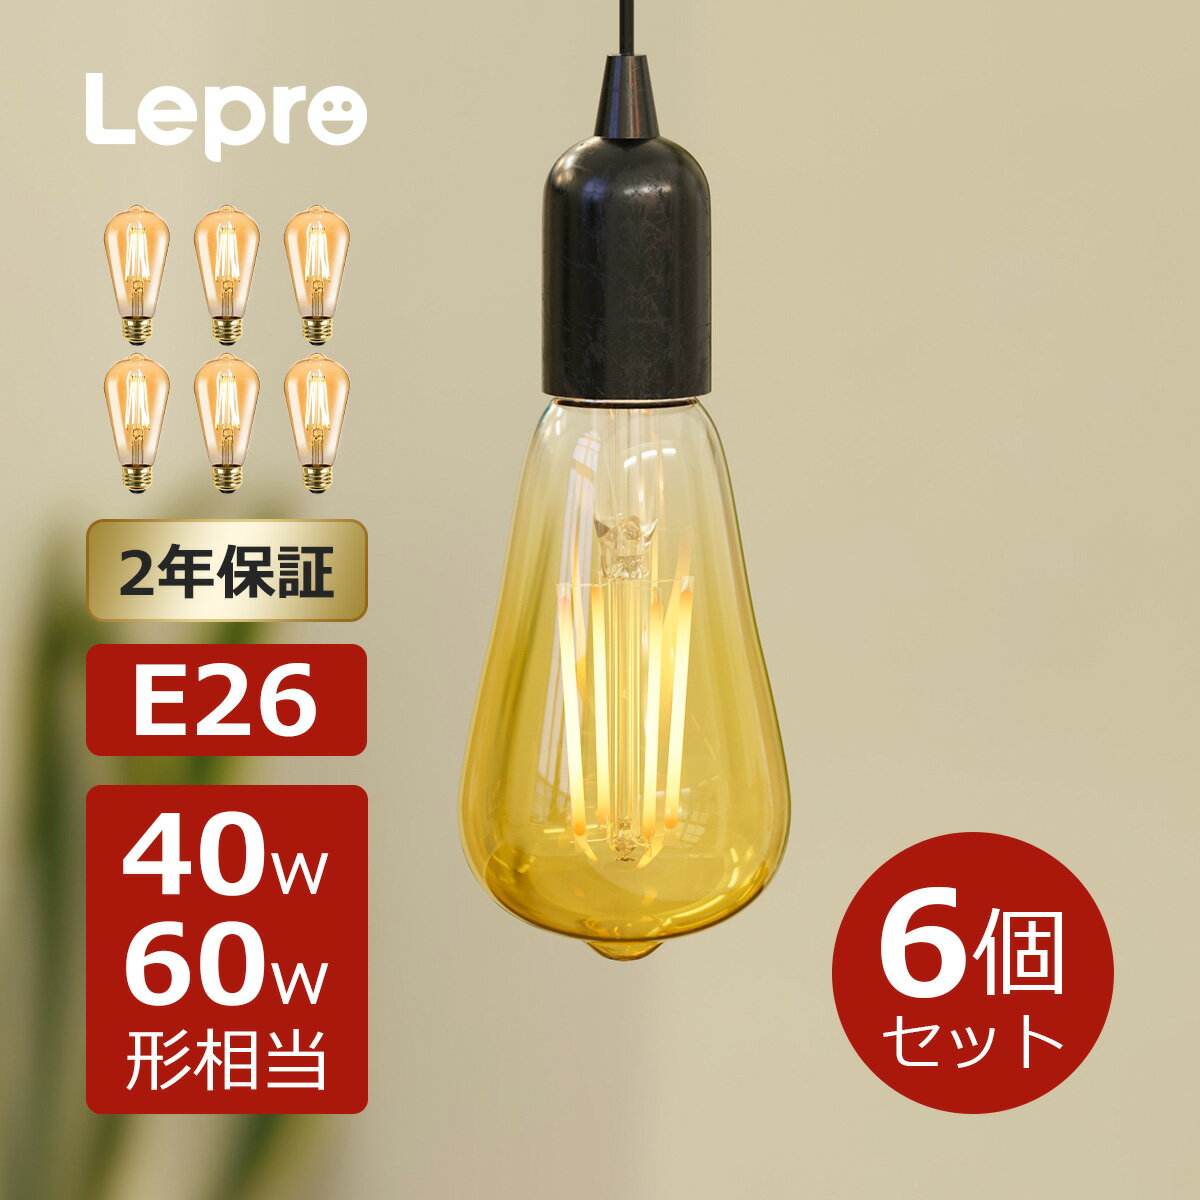 【6個セット】2年保証 Lepro led電球 e2